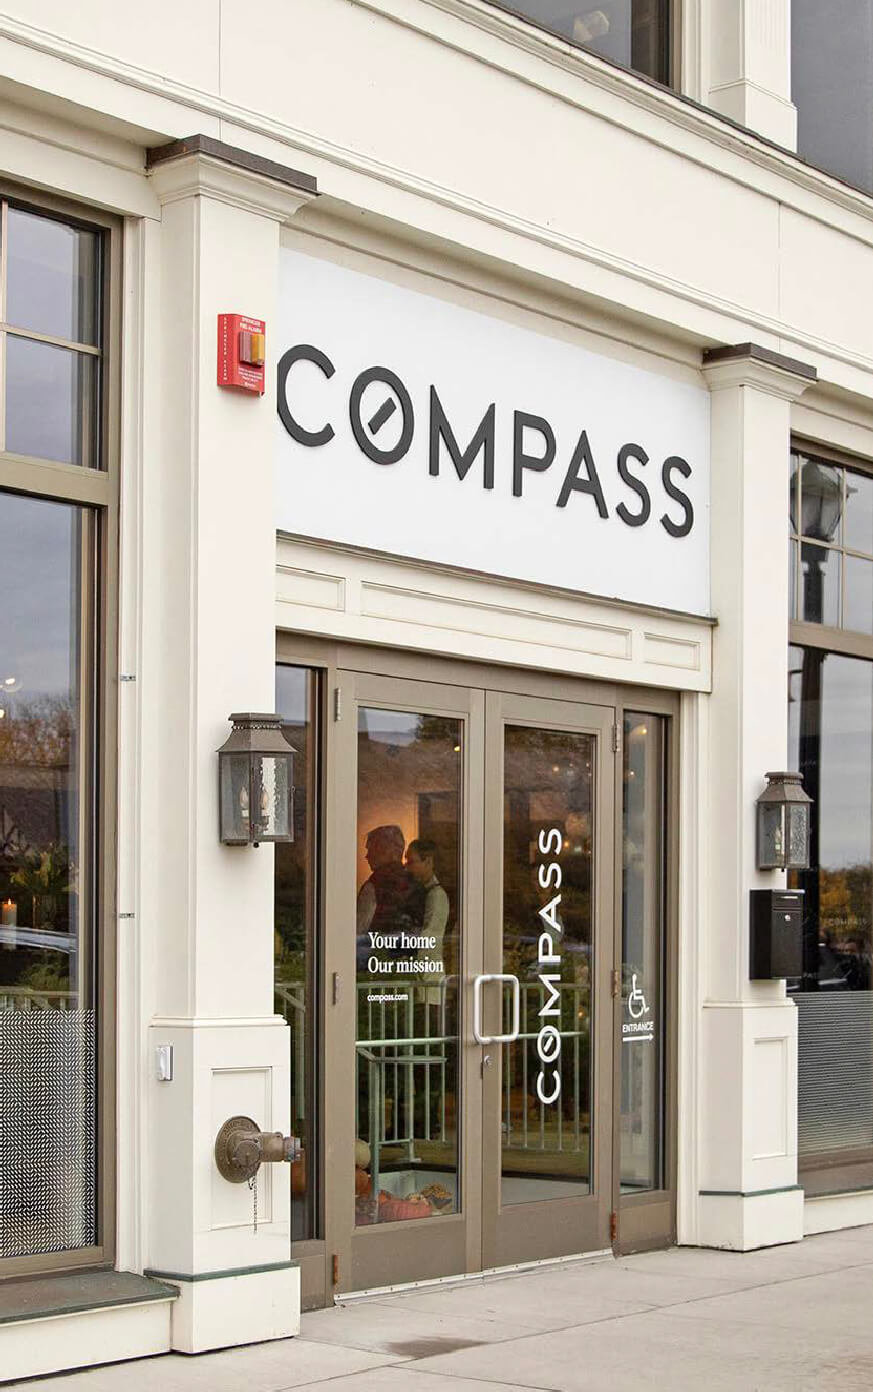 Compass building entrance